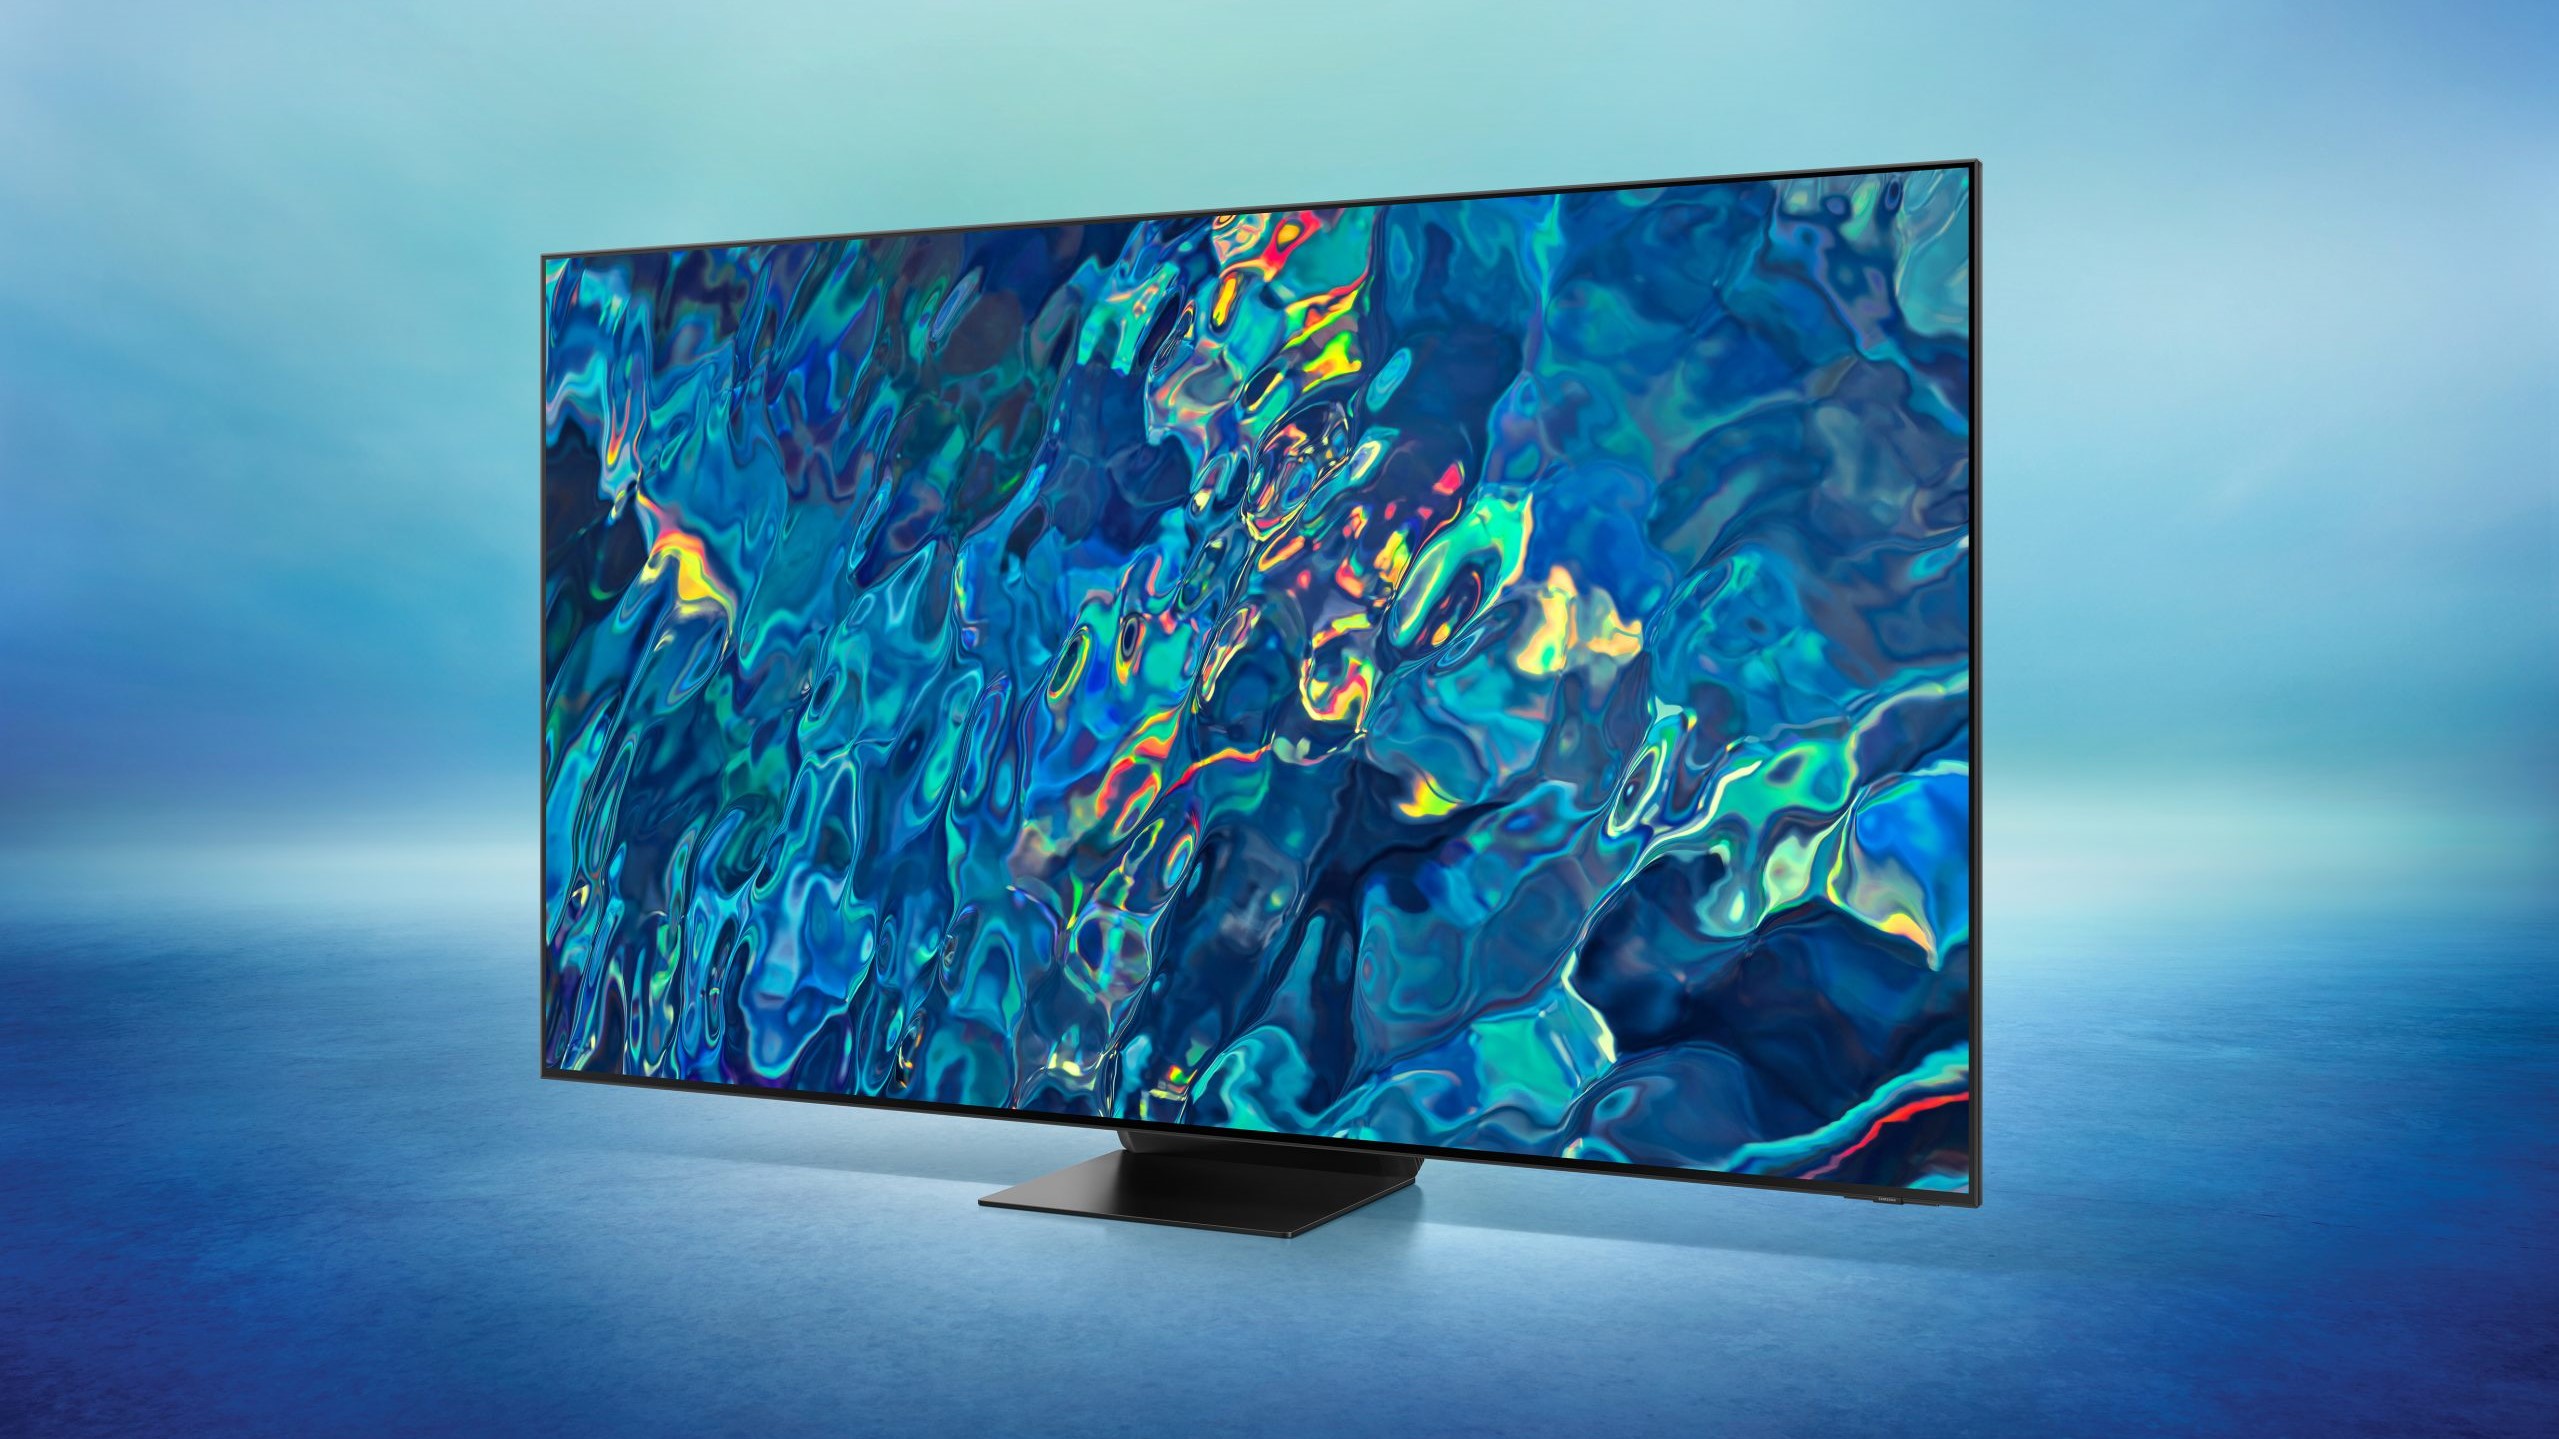 Мини-светодиодные 4K-телевизоры следующего поколения настроены на очень приятное снижение цен